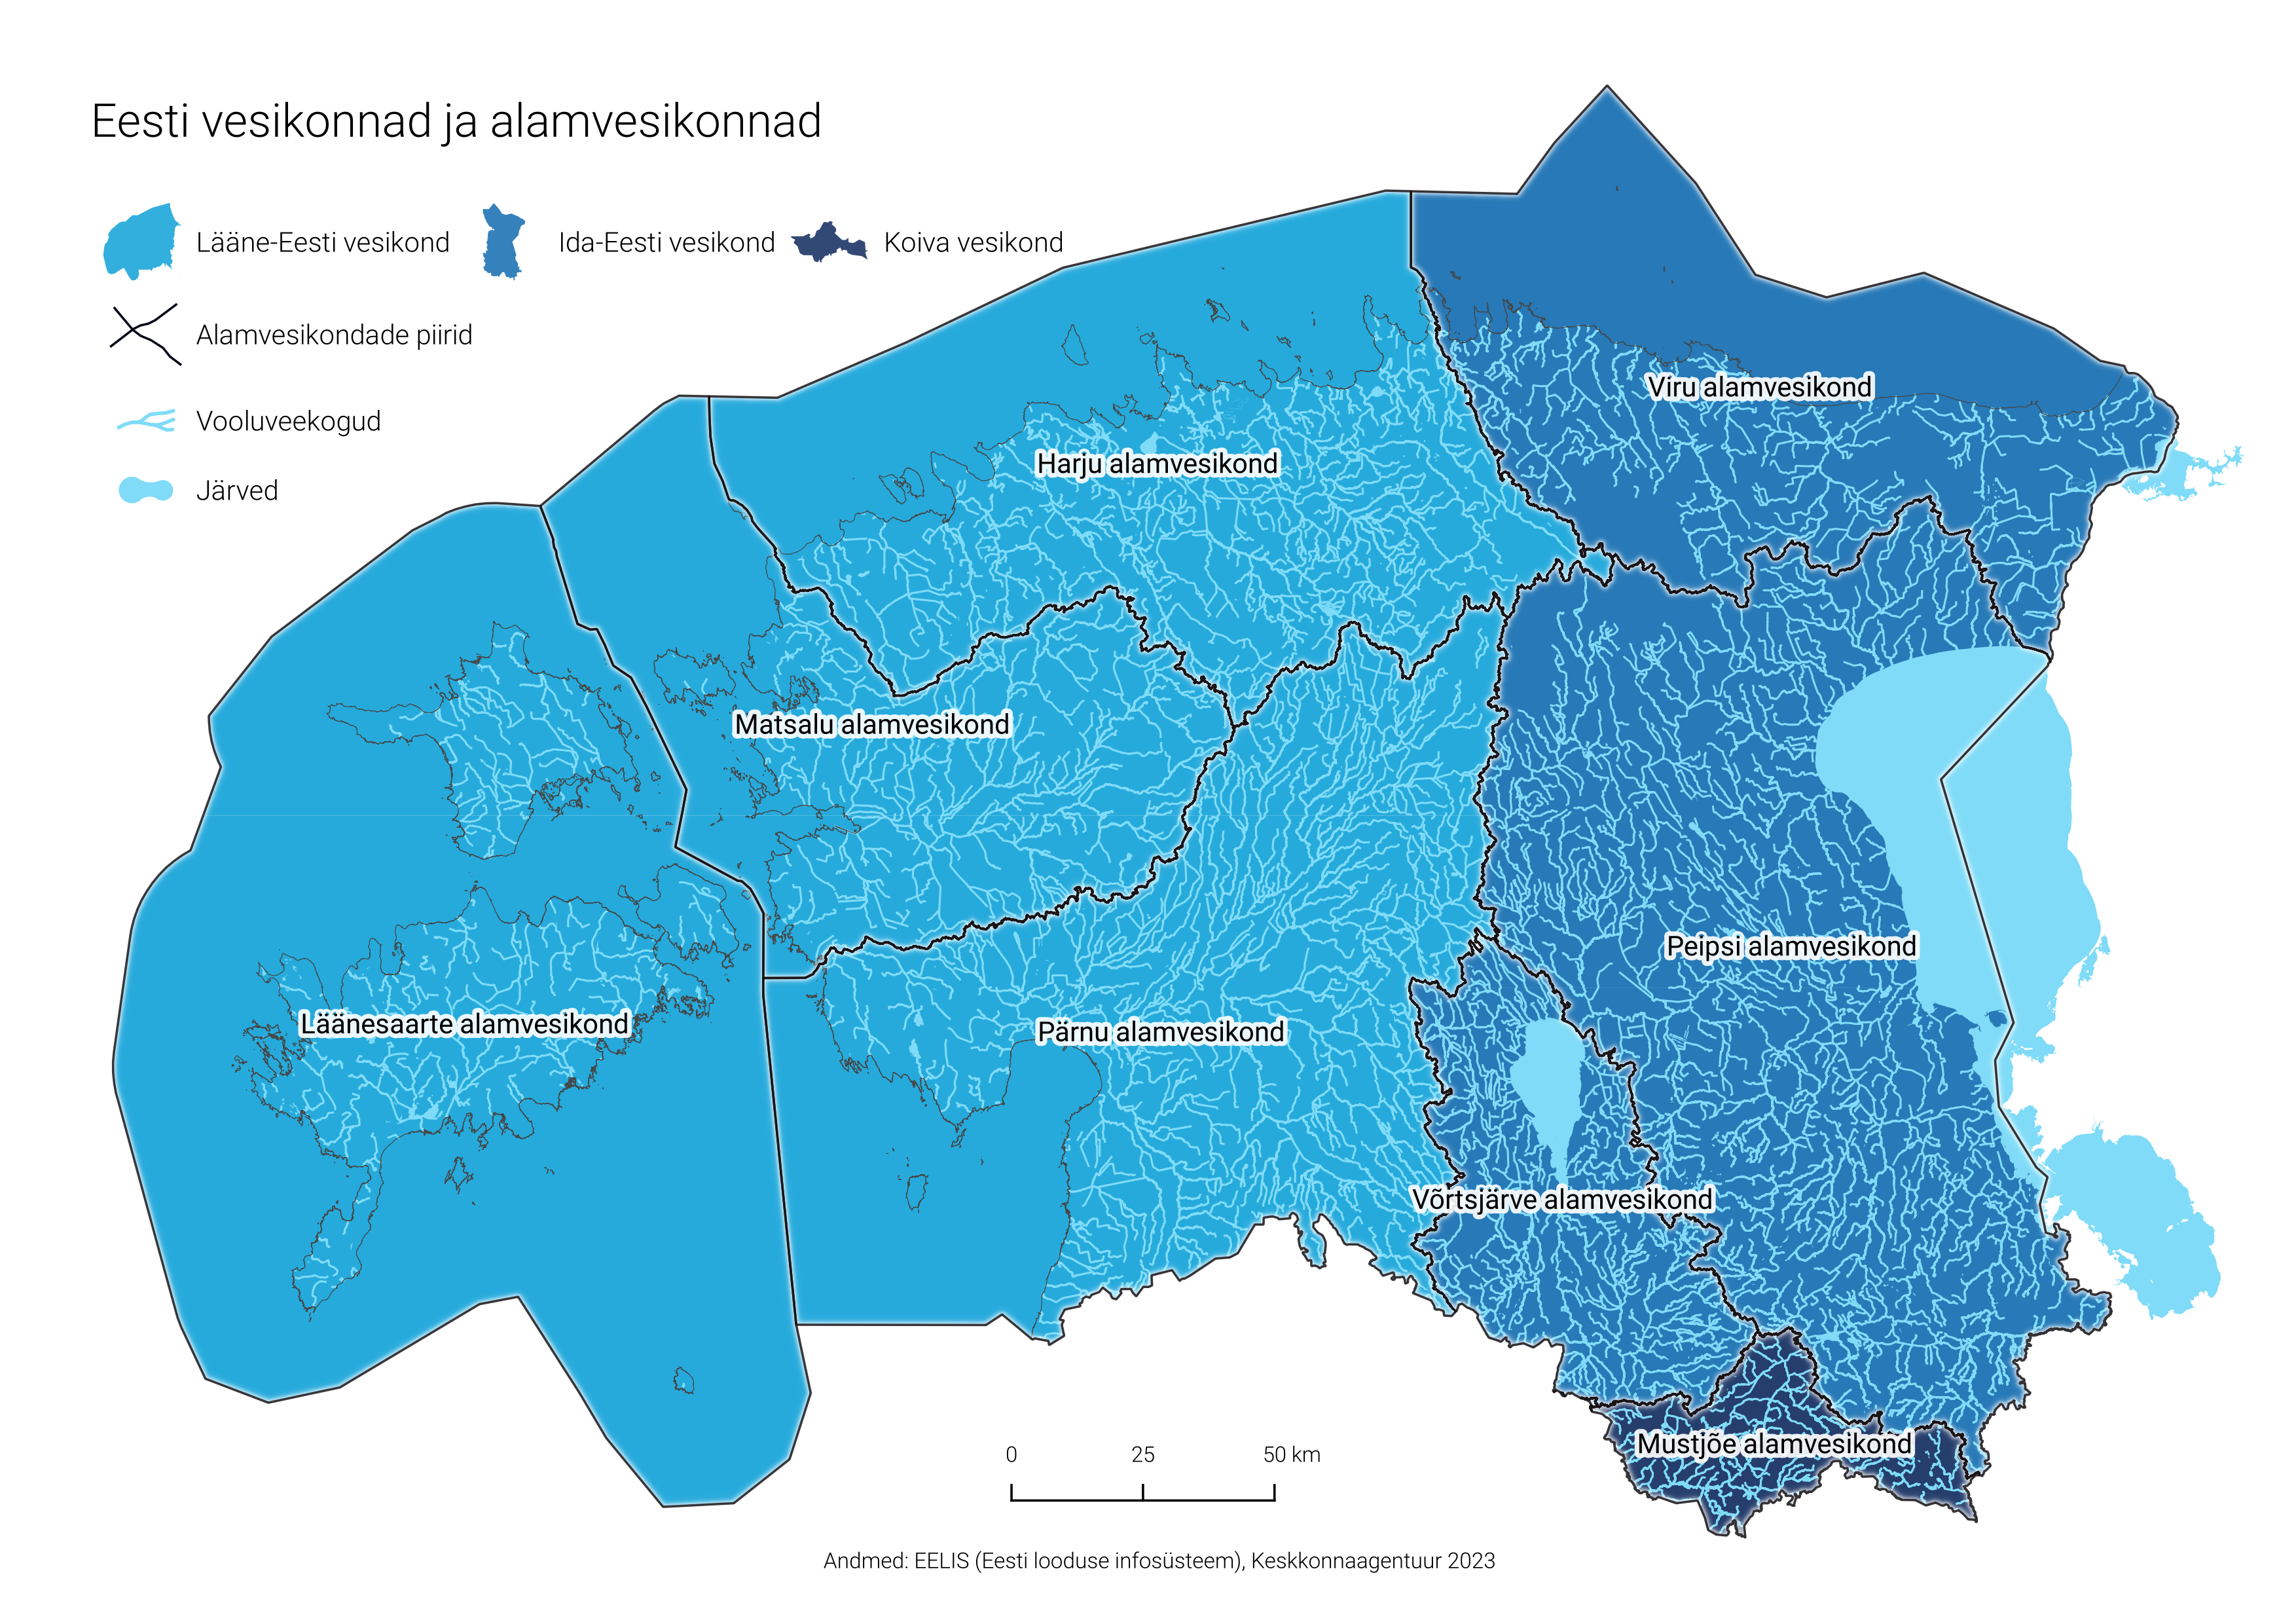 Eesti vesikondade ja alamvesikondade jaotus ja piirid Eesti kaardil